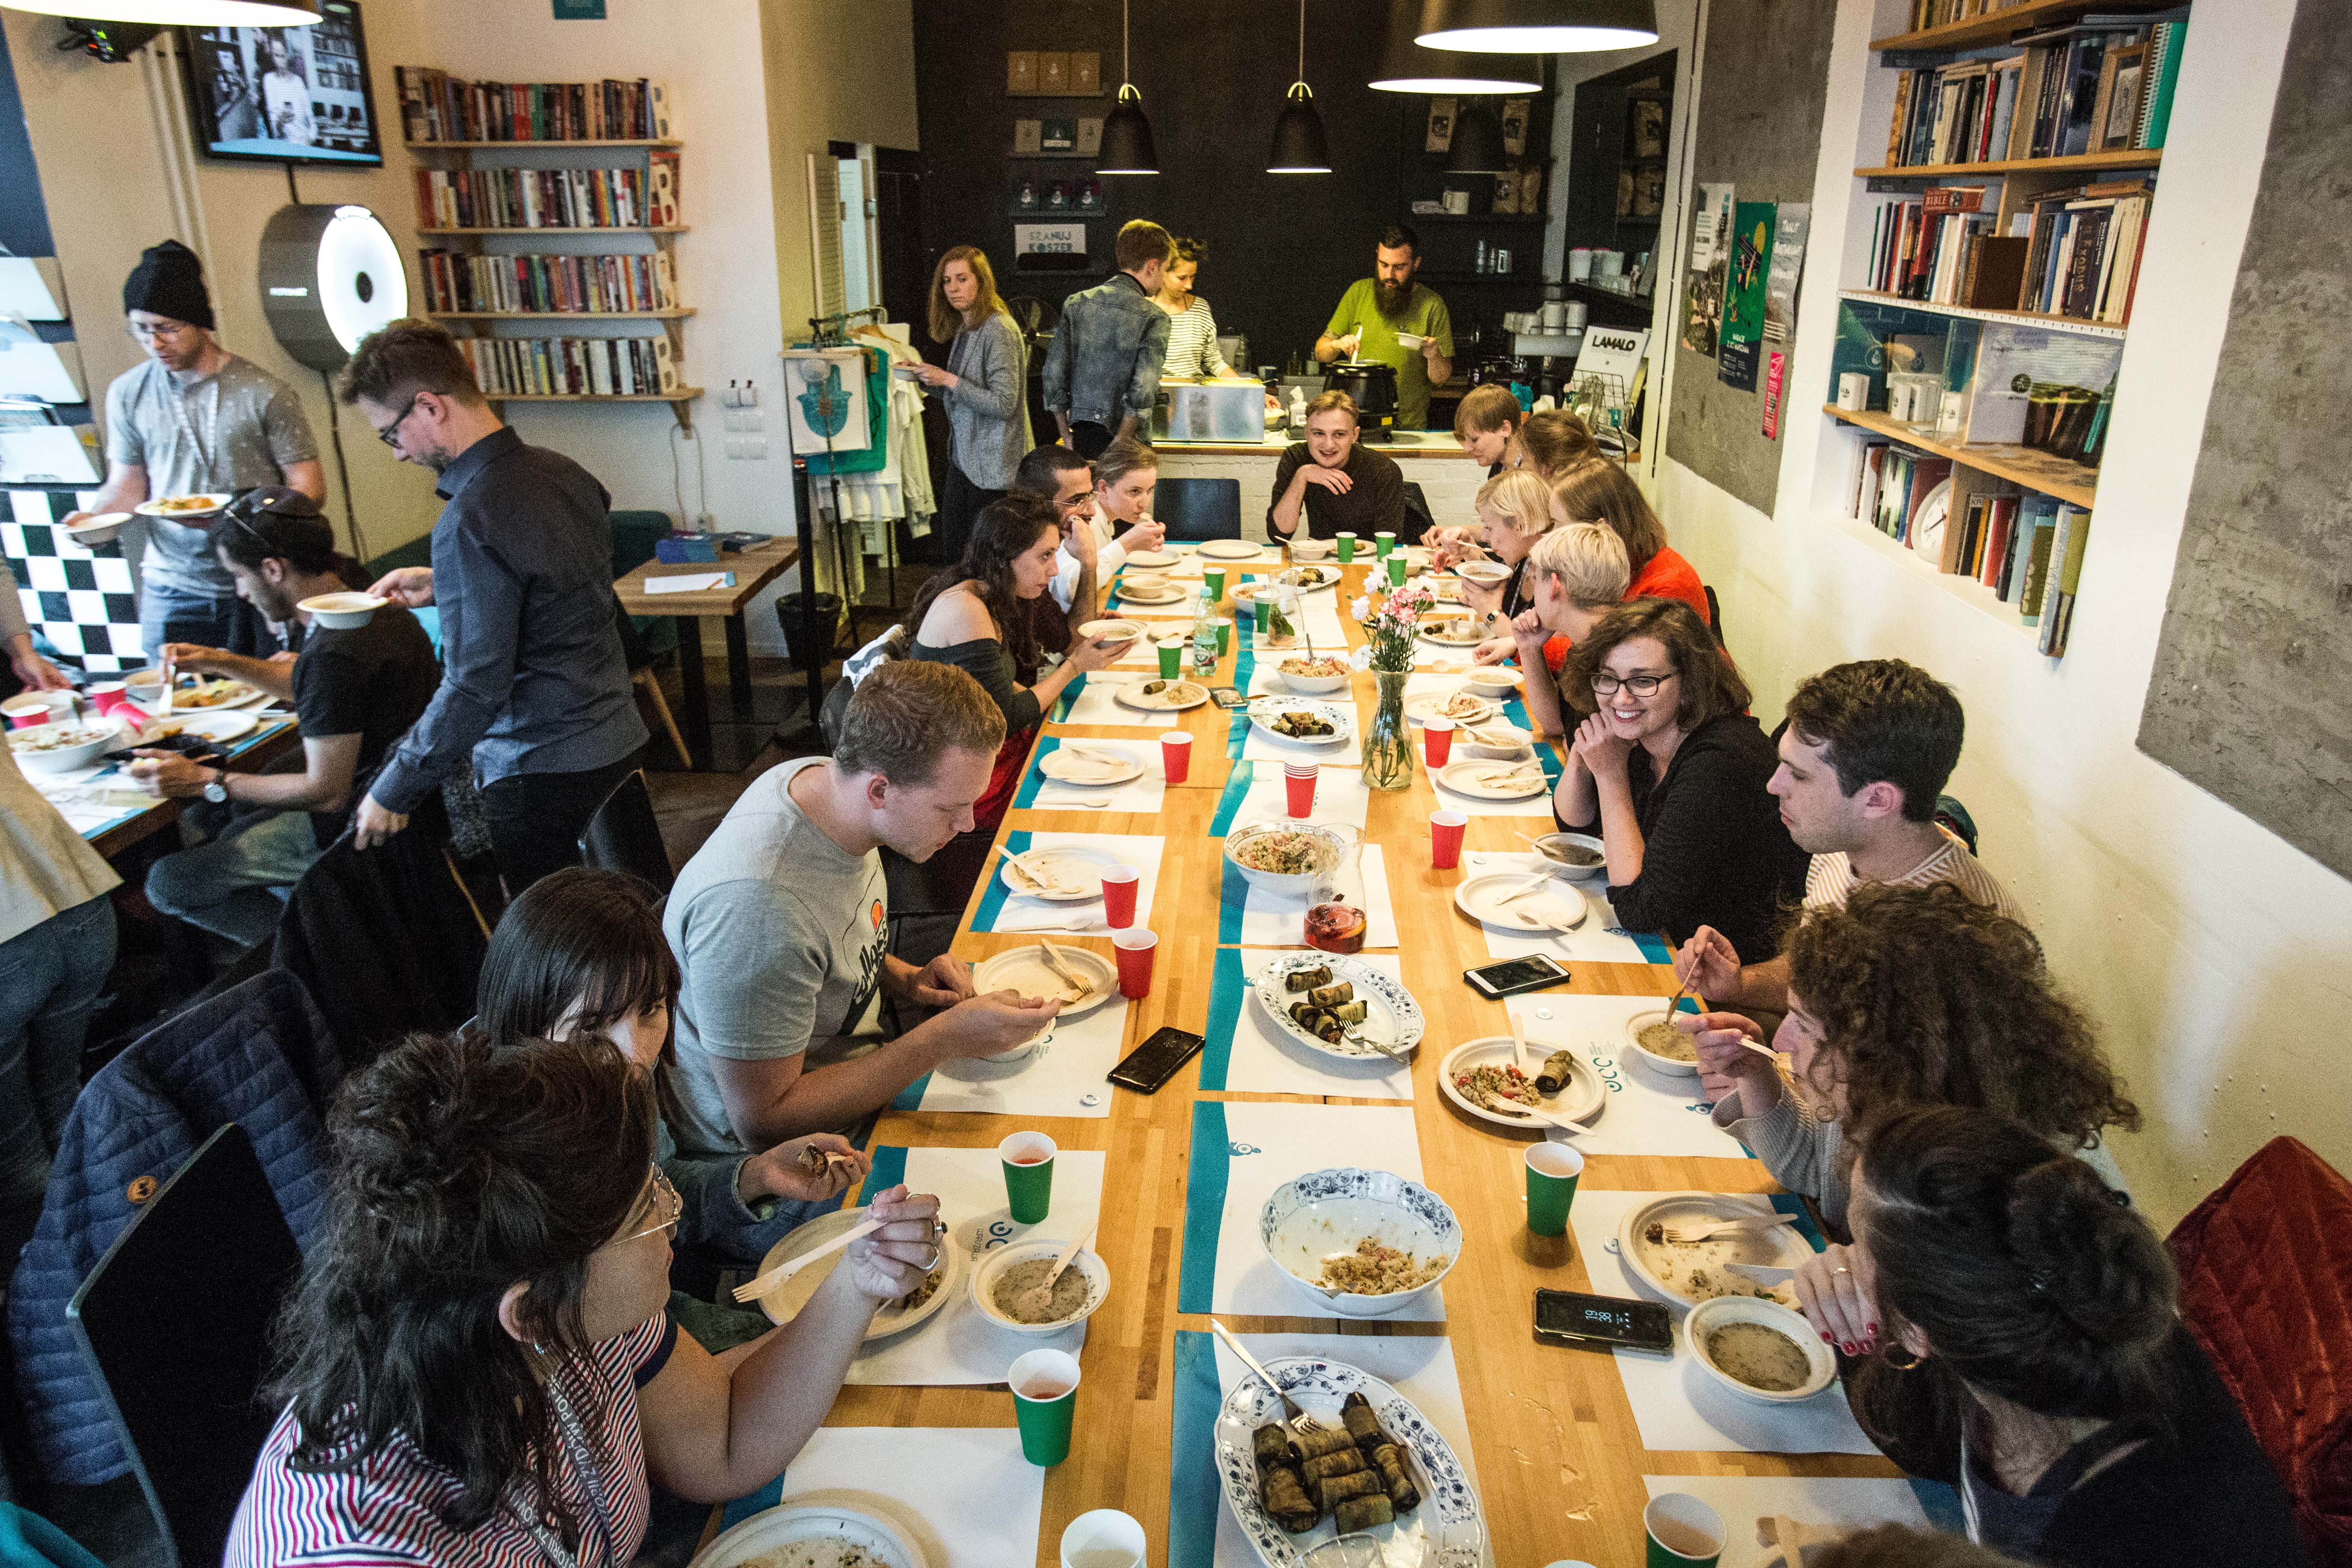 Uczestnicy PIYE 2019 podczas uroczystej kolacji, na spotkaniu z Kuchnią Konfliktu i JCC. Wszyscy siedzą przy długim stole i jedzą posiłek.